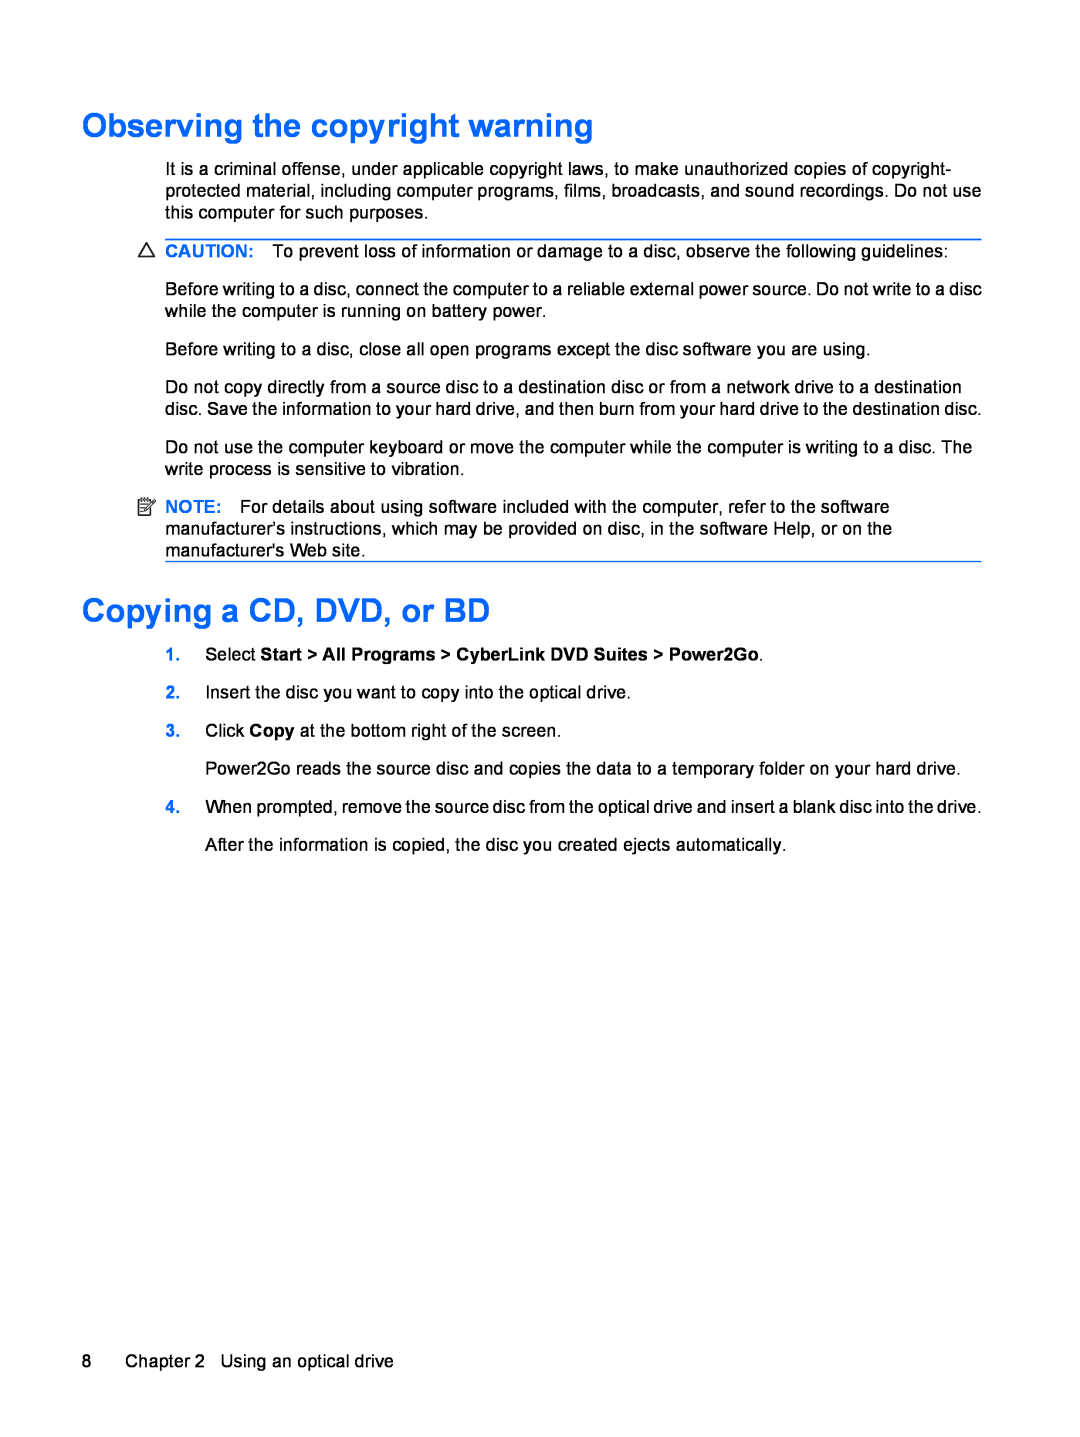 HP CQ61-313TU, CQ61-312TX, CQ61-313AX, CQ61-312SL, CQ61-310US manual Observing the copyright warning, Copying a CD, DVD, or BD 